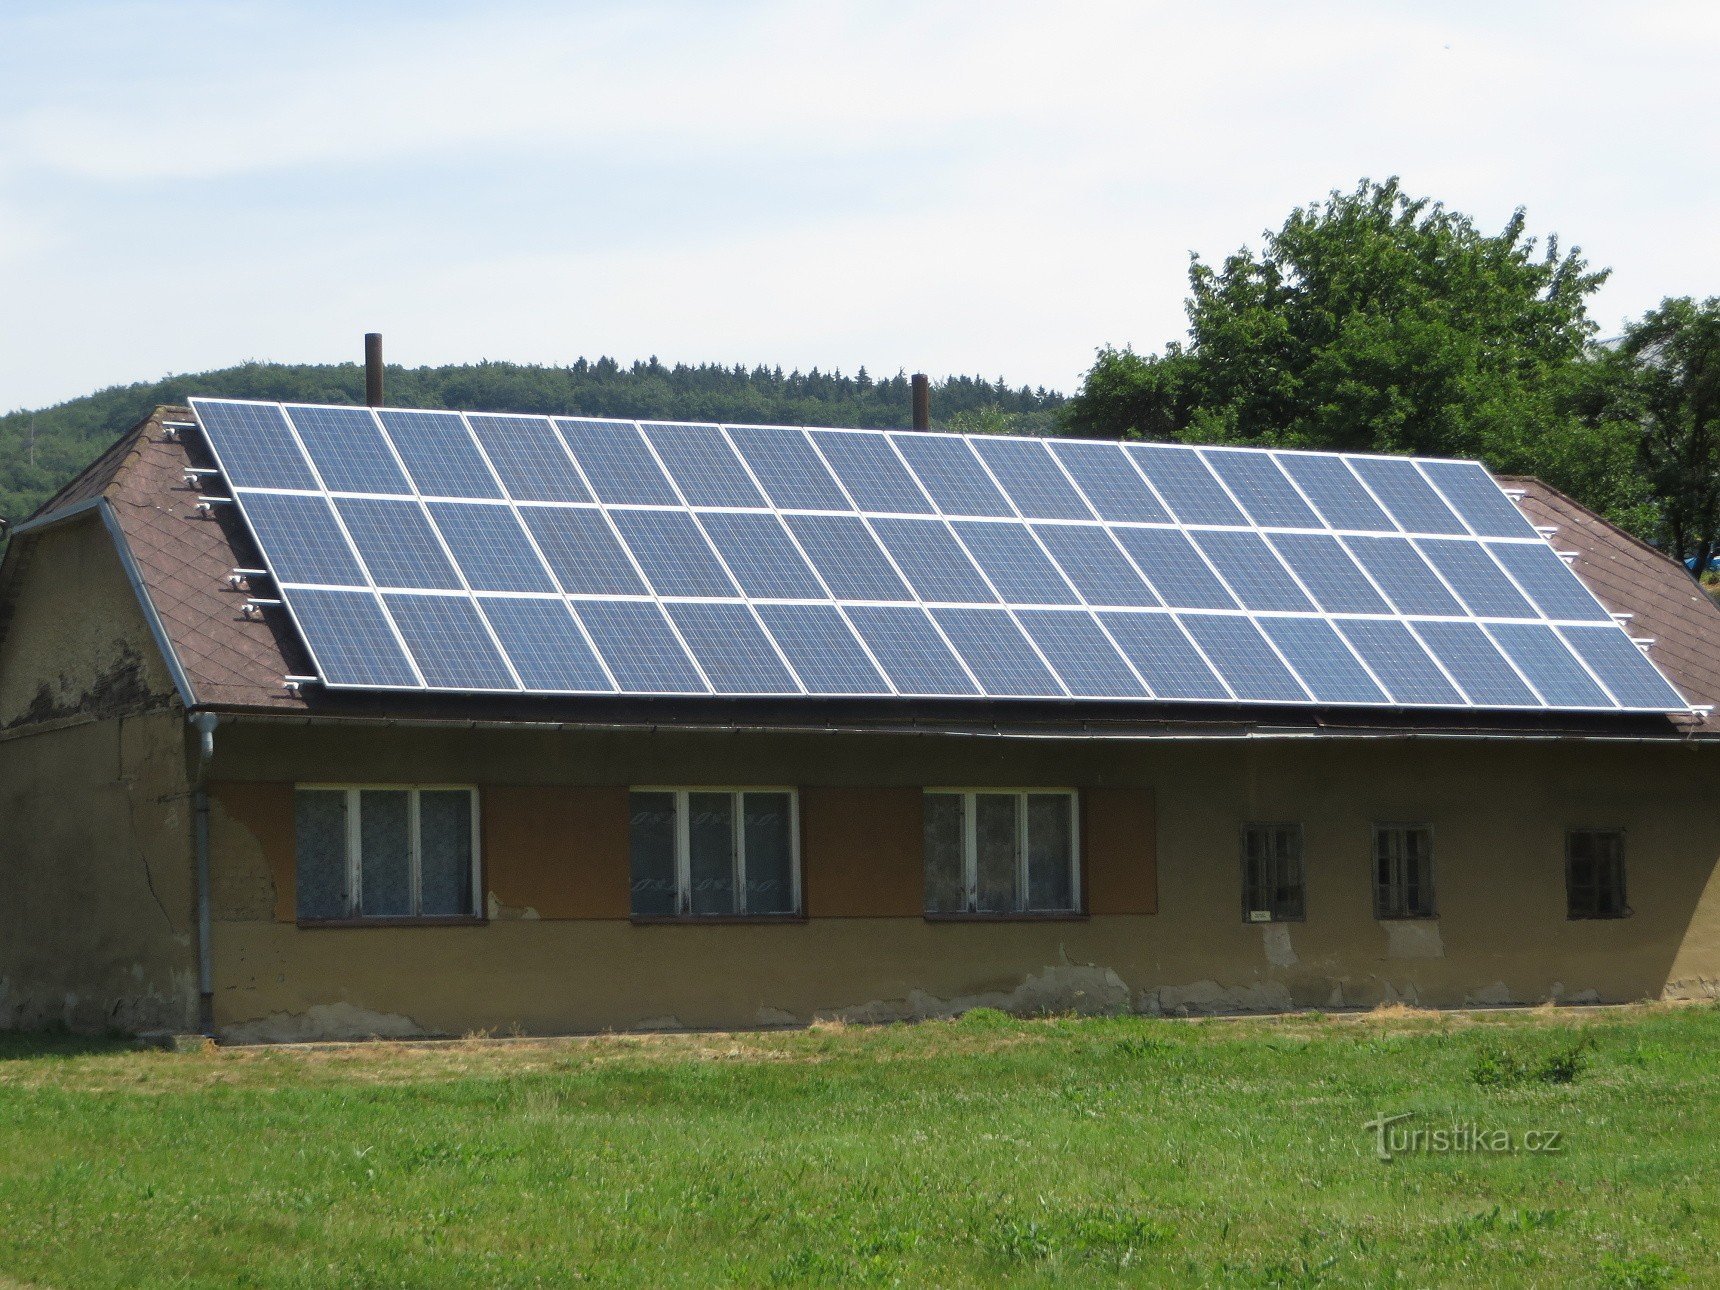 Staré Hutě - centrale solare